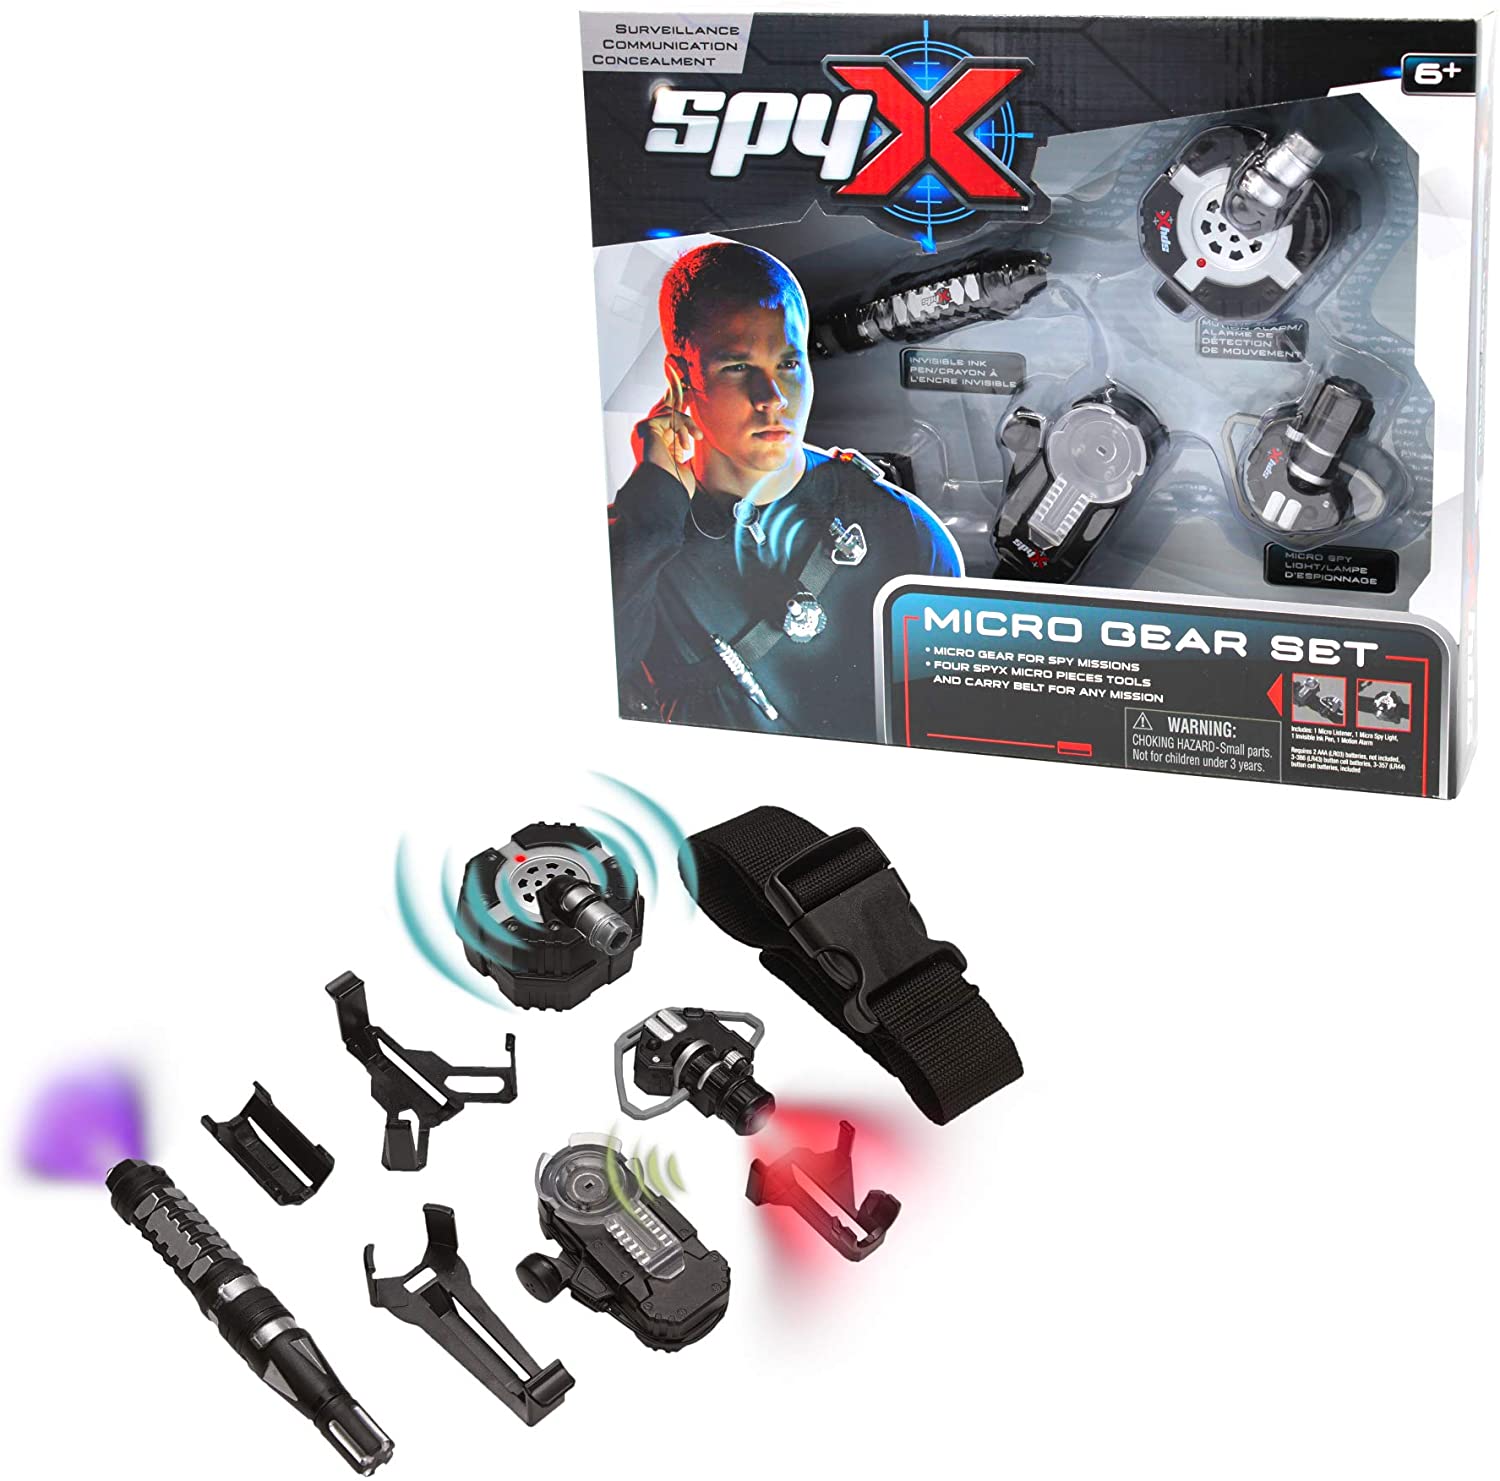 Spy-X Micro Gear Set